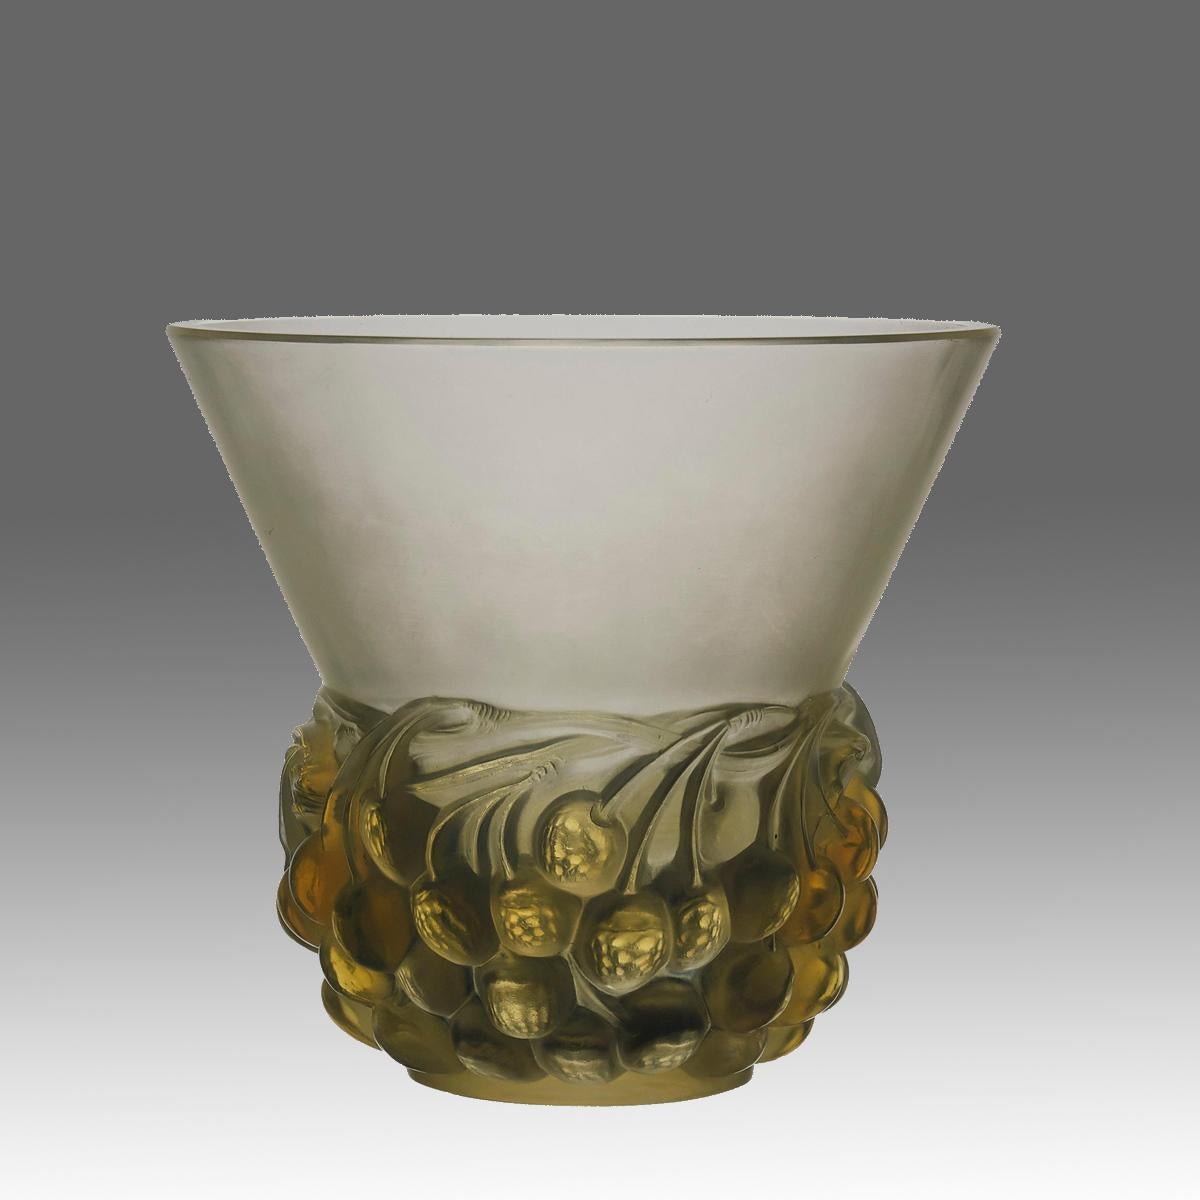 Ein attraktives René Lalique Original Art Deco Glasvase mit erhobenen fruchtigen Beeren um den gesamten Umfang der Vase verziert, zeigt eine ausgezeichnete Mischung aus mattiert und opalisierenden Glas mit feinen handgefertigten Details, signiert R